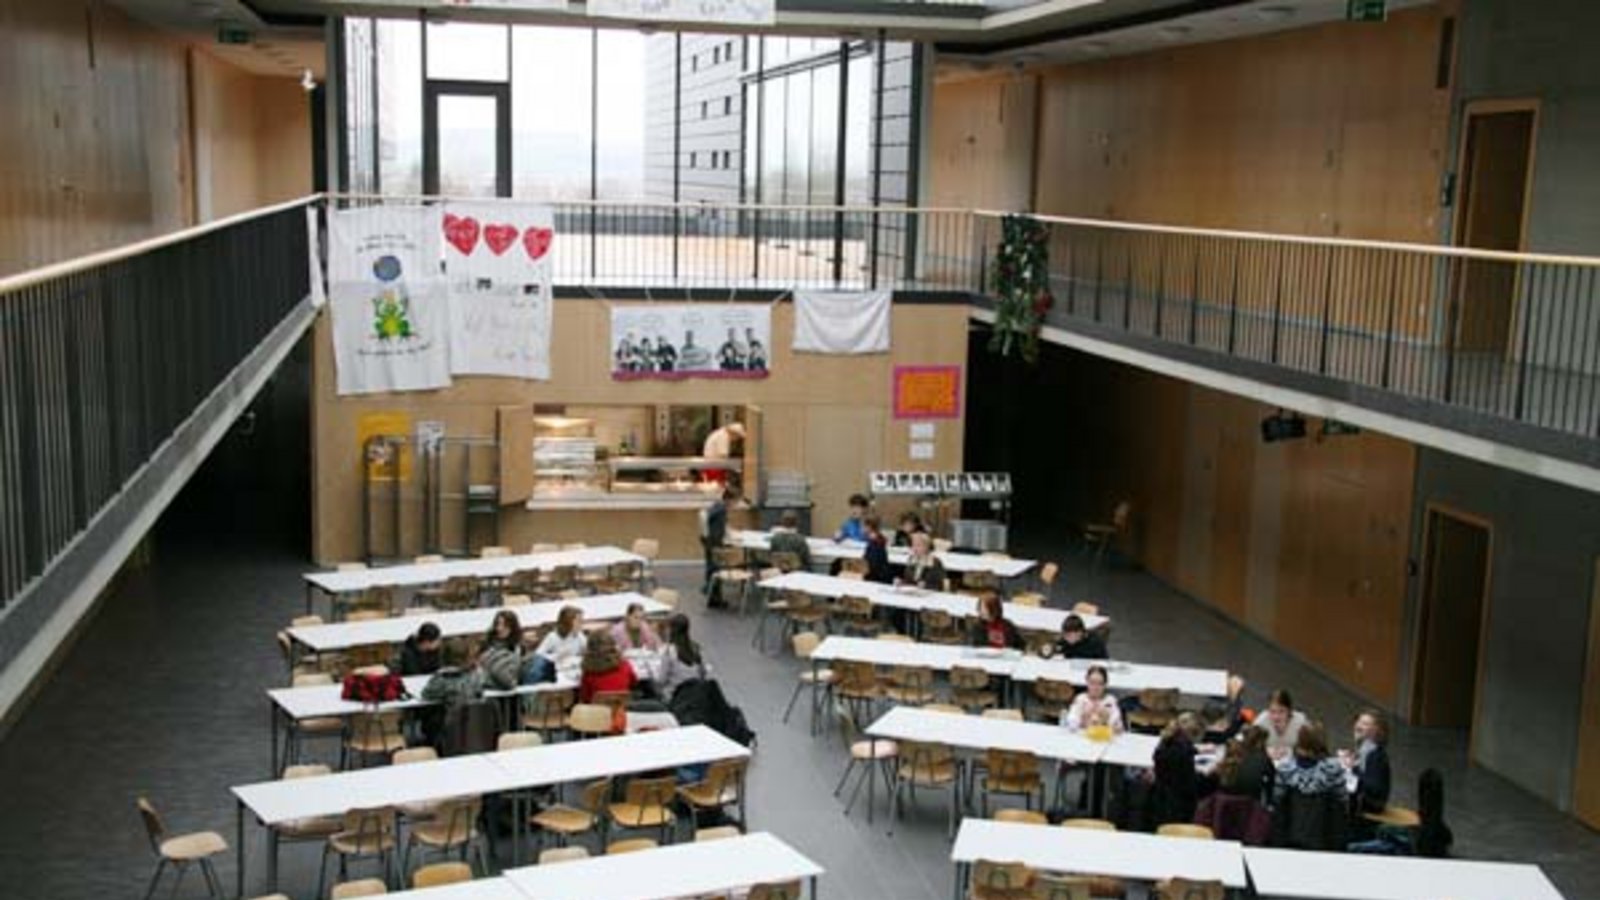 Die offene Mensa im Stromberg-Gymnasium. Foto: Rücker